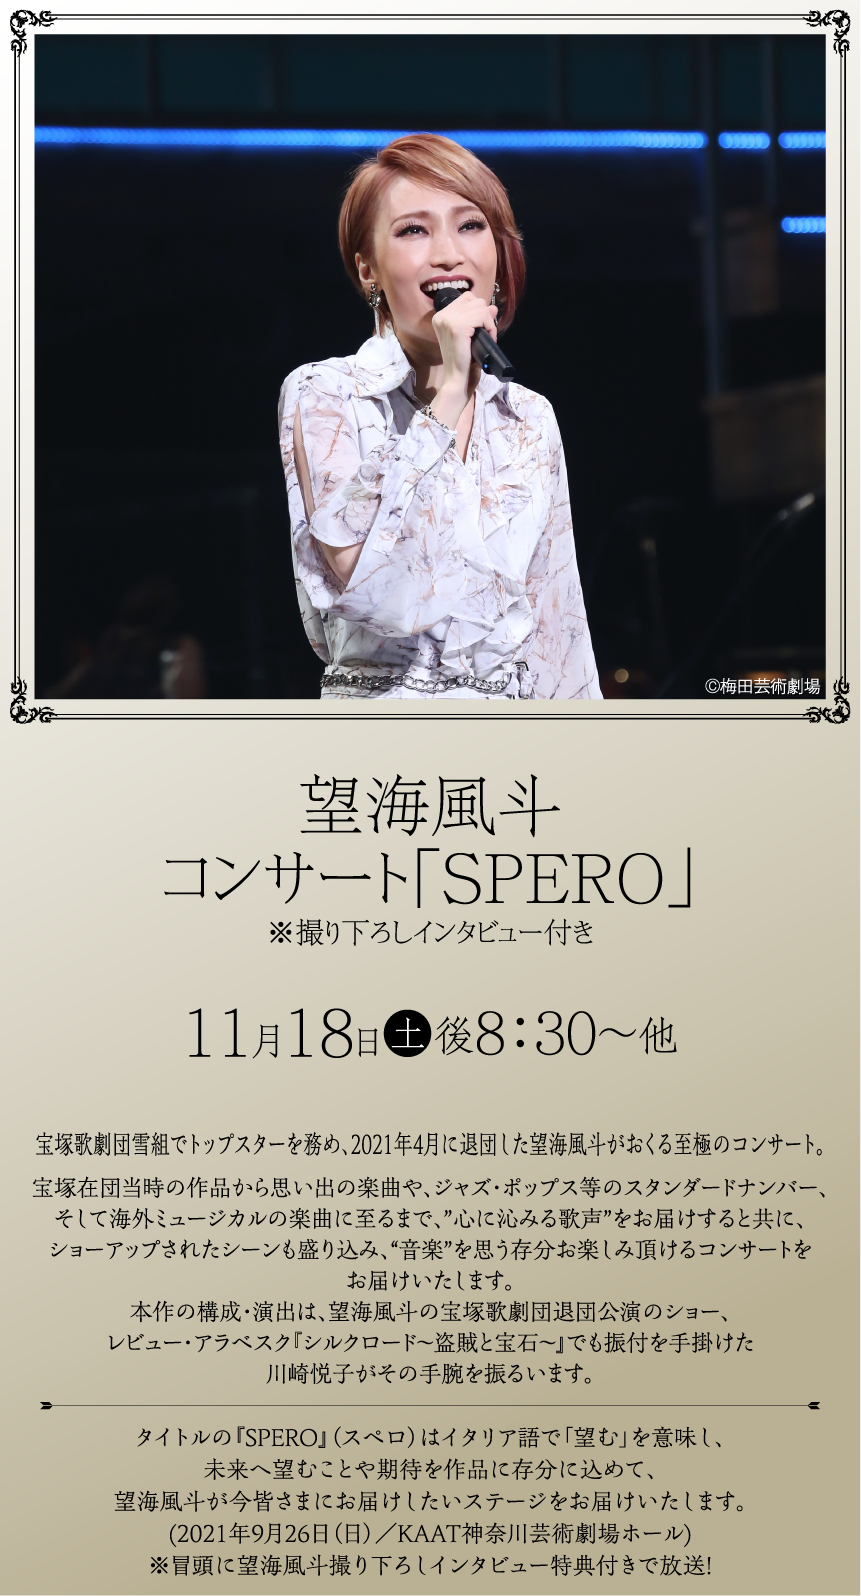 望海風斗コンサート「SPERO」 | ホームドラマチャンネル LIVEコレクション ｜ホームドラマチャンネル